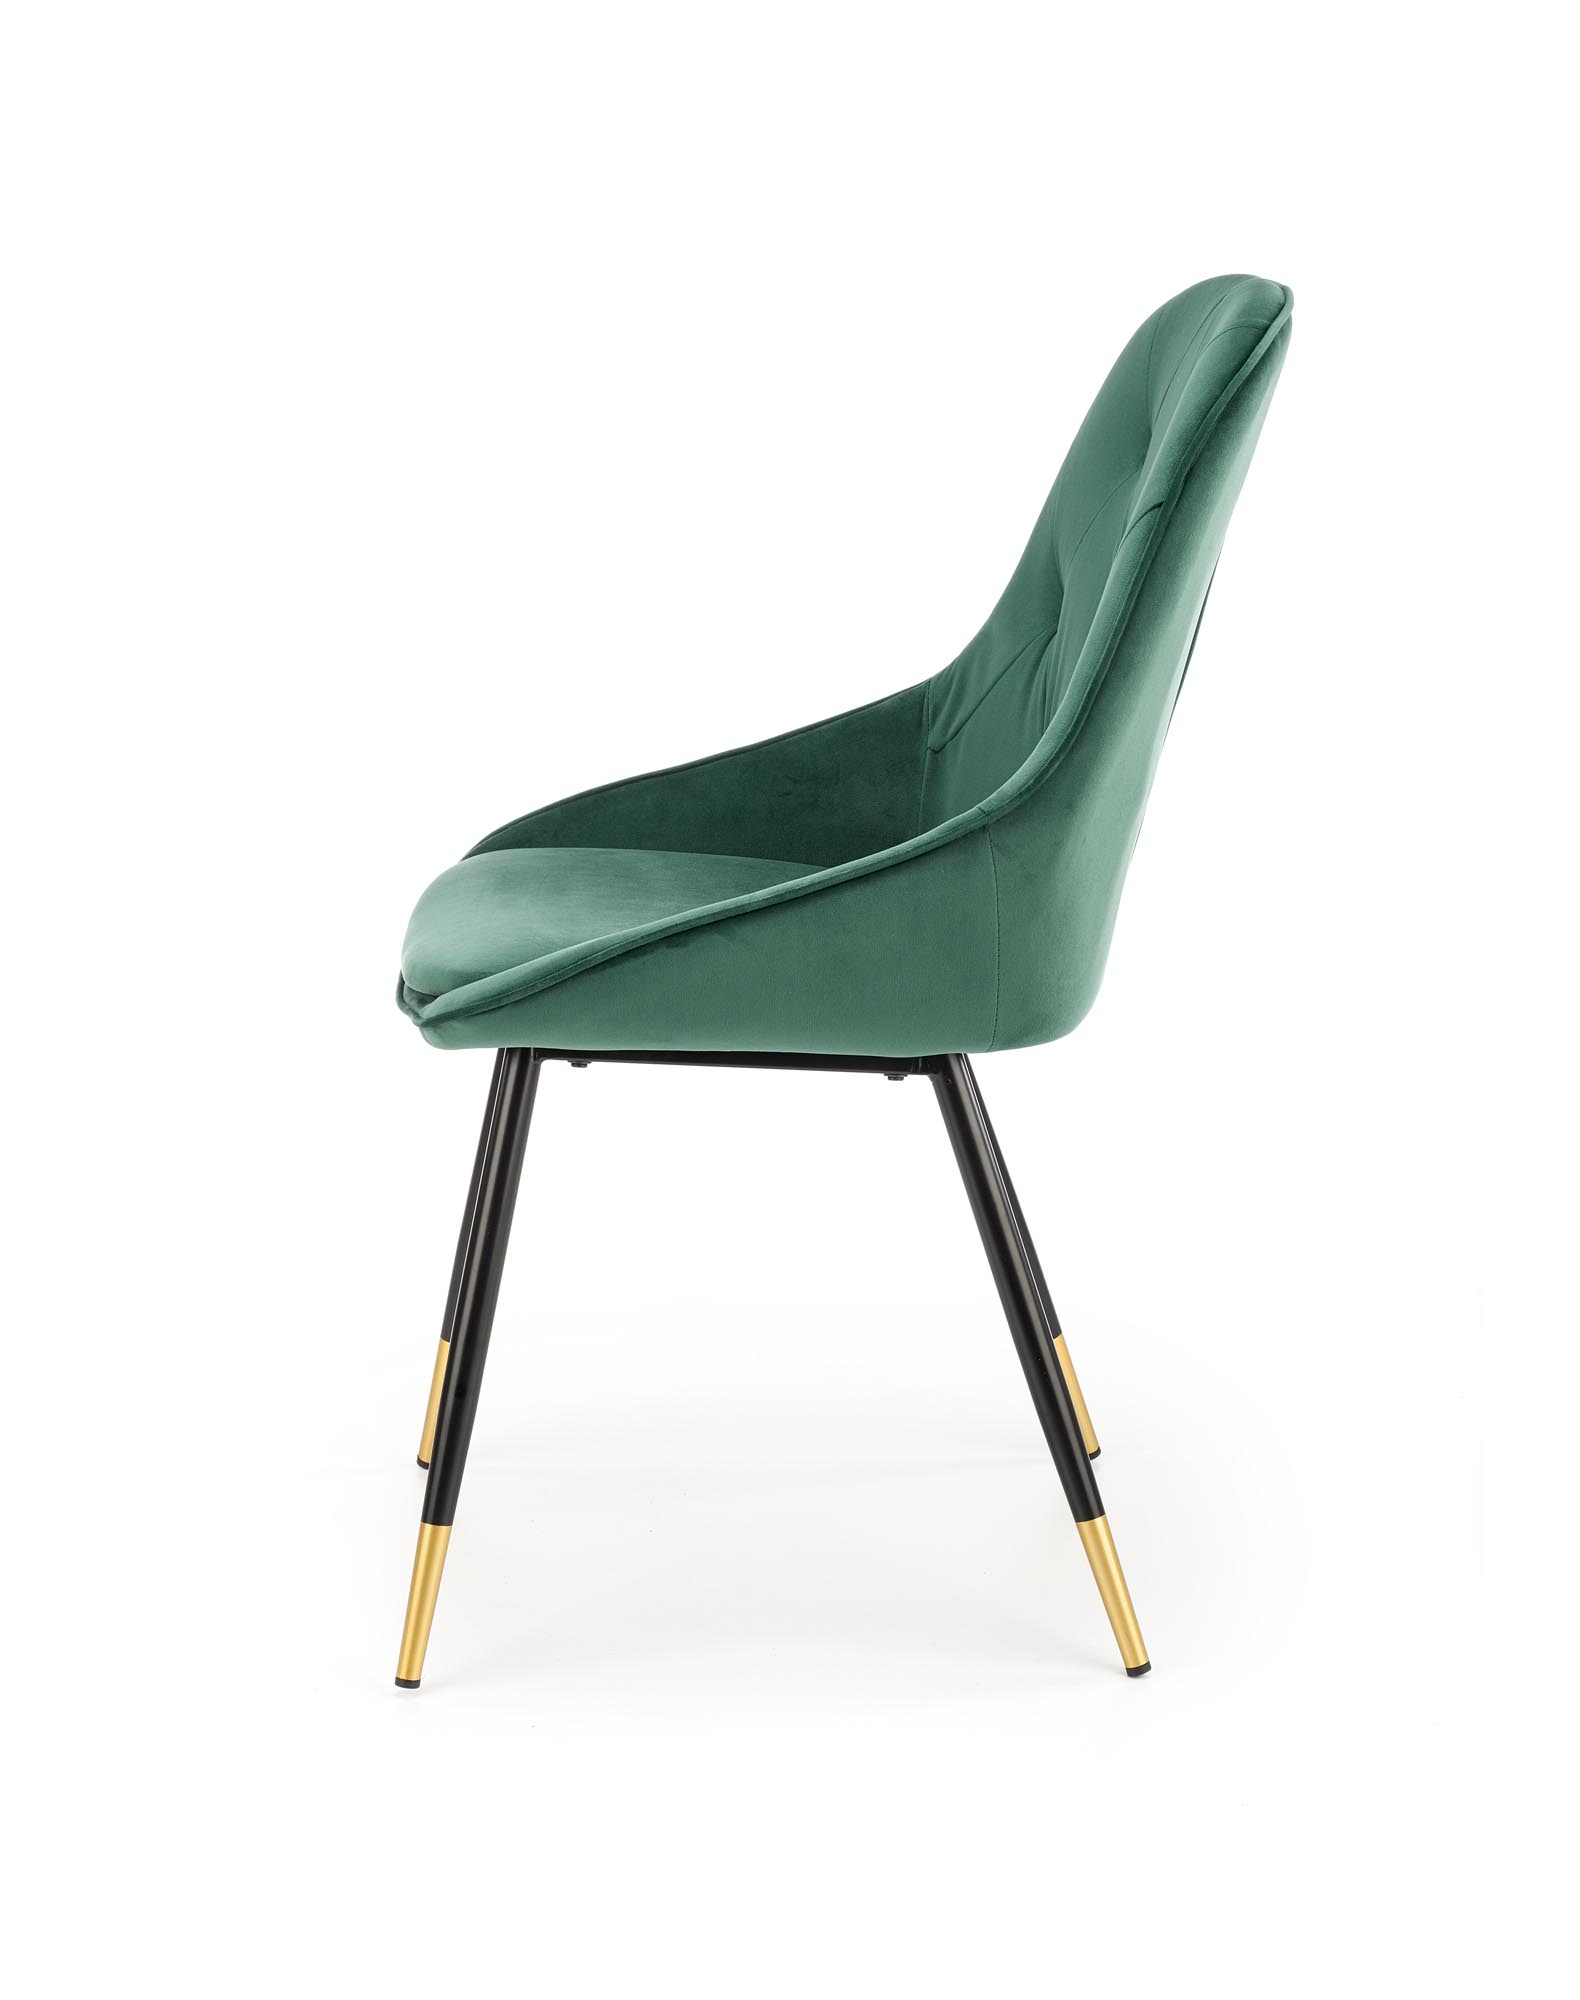 K437 Židle tmavě zelená k437 Židle tmavý Zelený